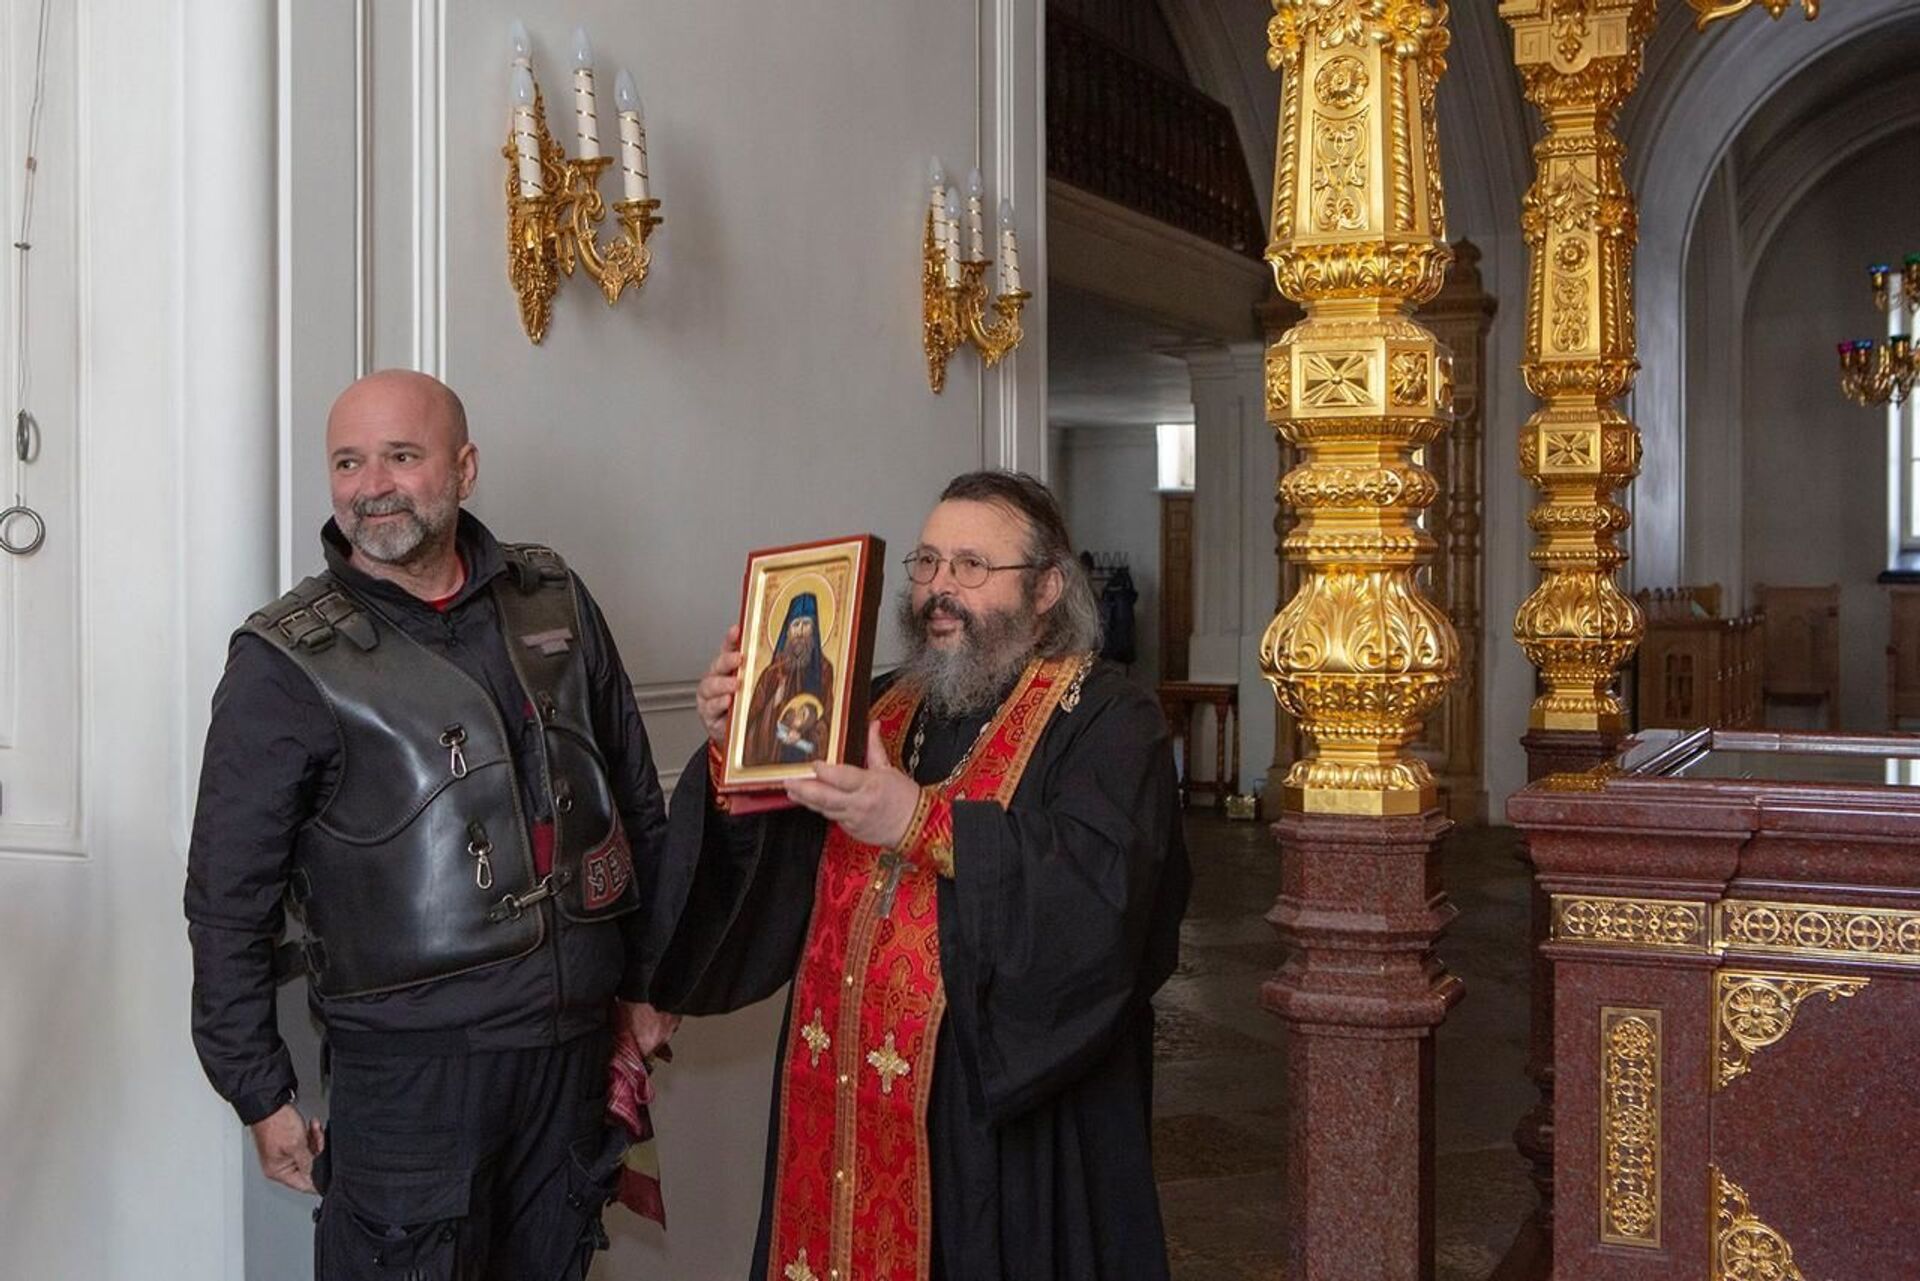 Slobodan Bašić darovao je ikonu monaha Haritona monaškom bratstvu u manastiru Valam. - Sputnik Srbija, 1920, 13.07.2021